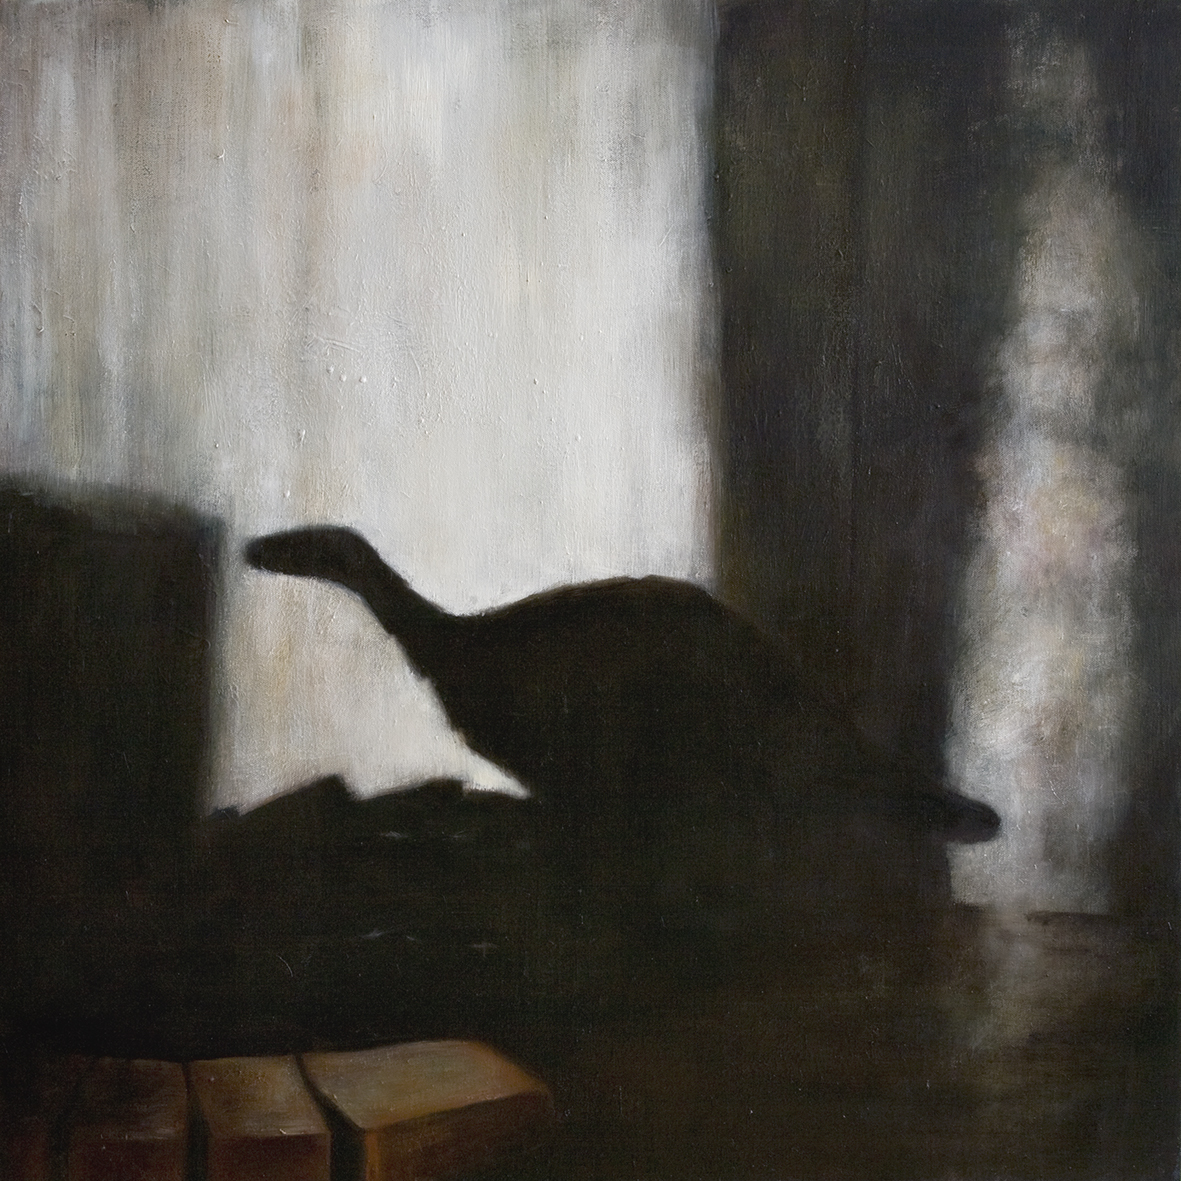   Interior with dinosaur   Oil on canvas 100 x 100 cm   2008  